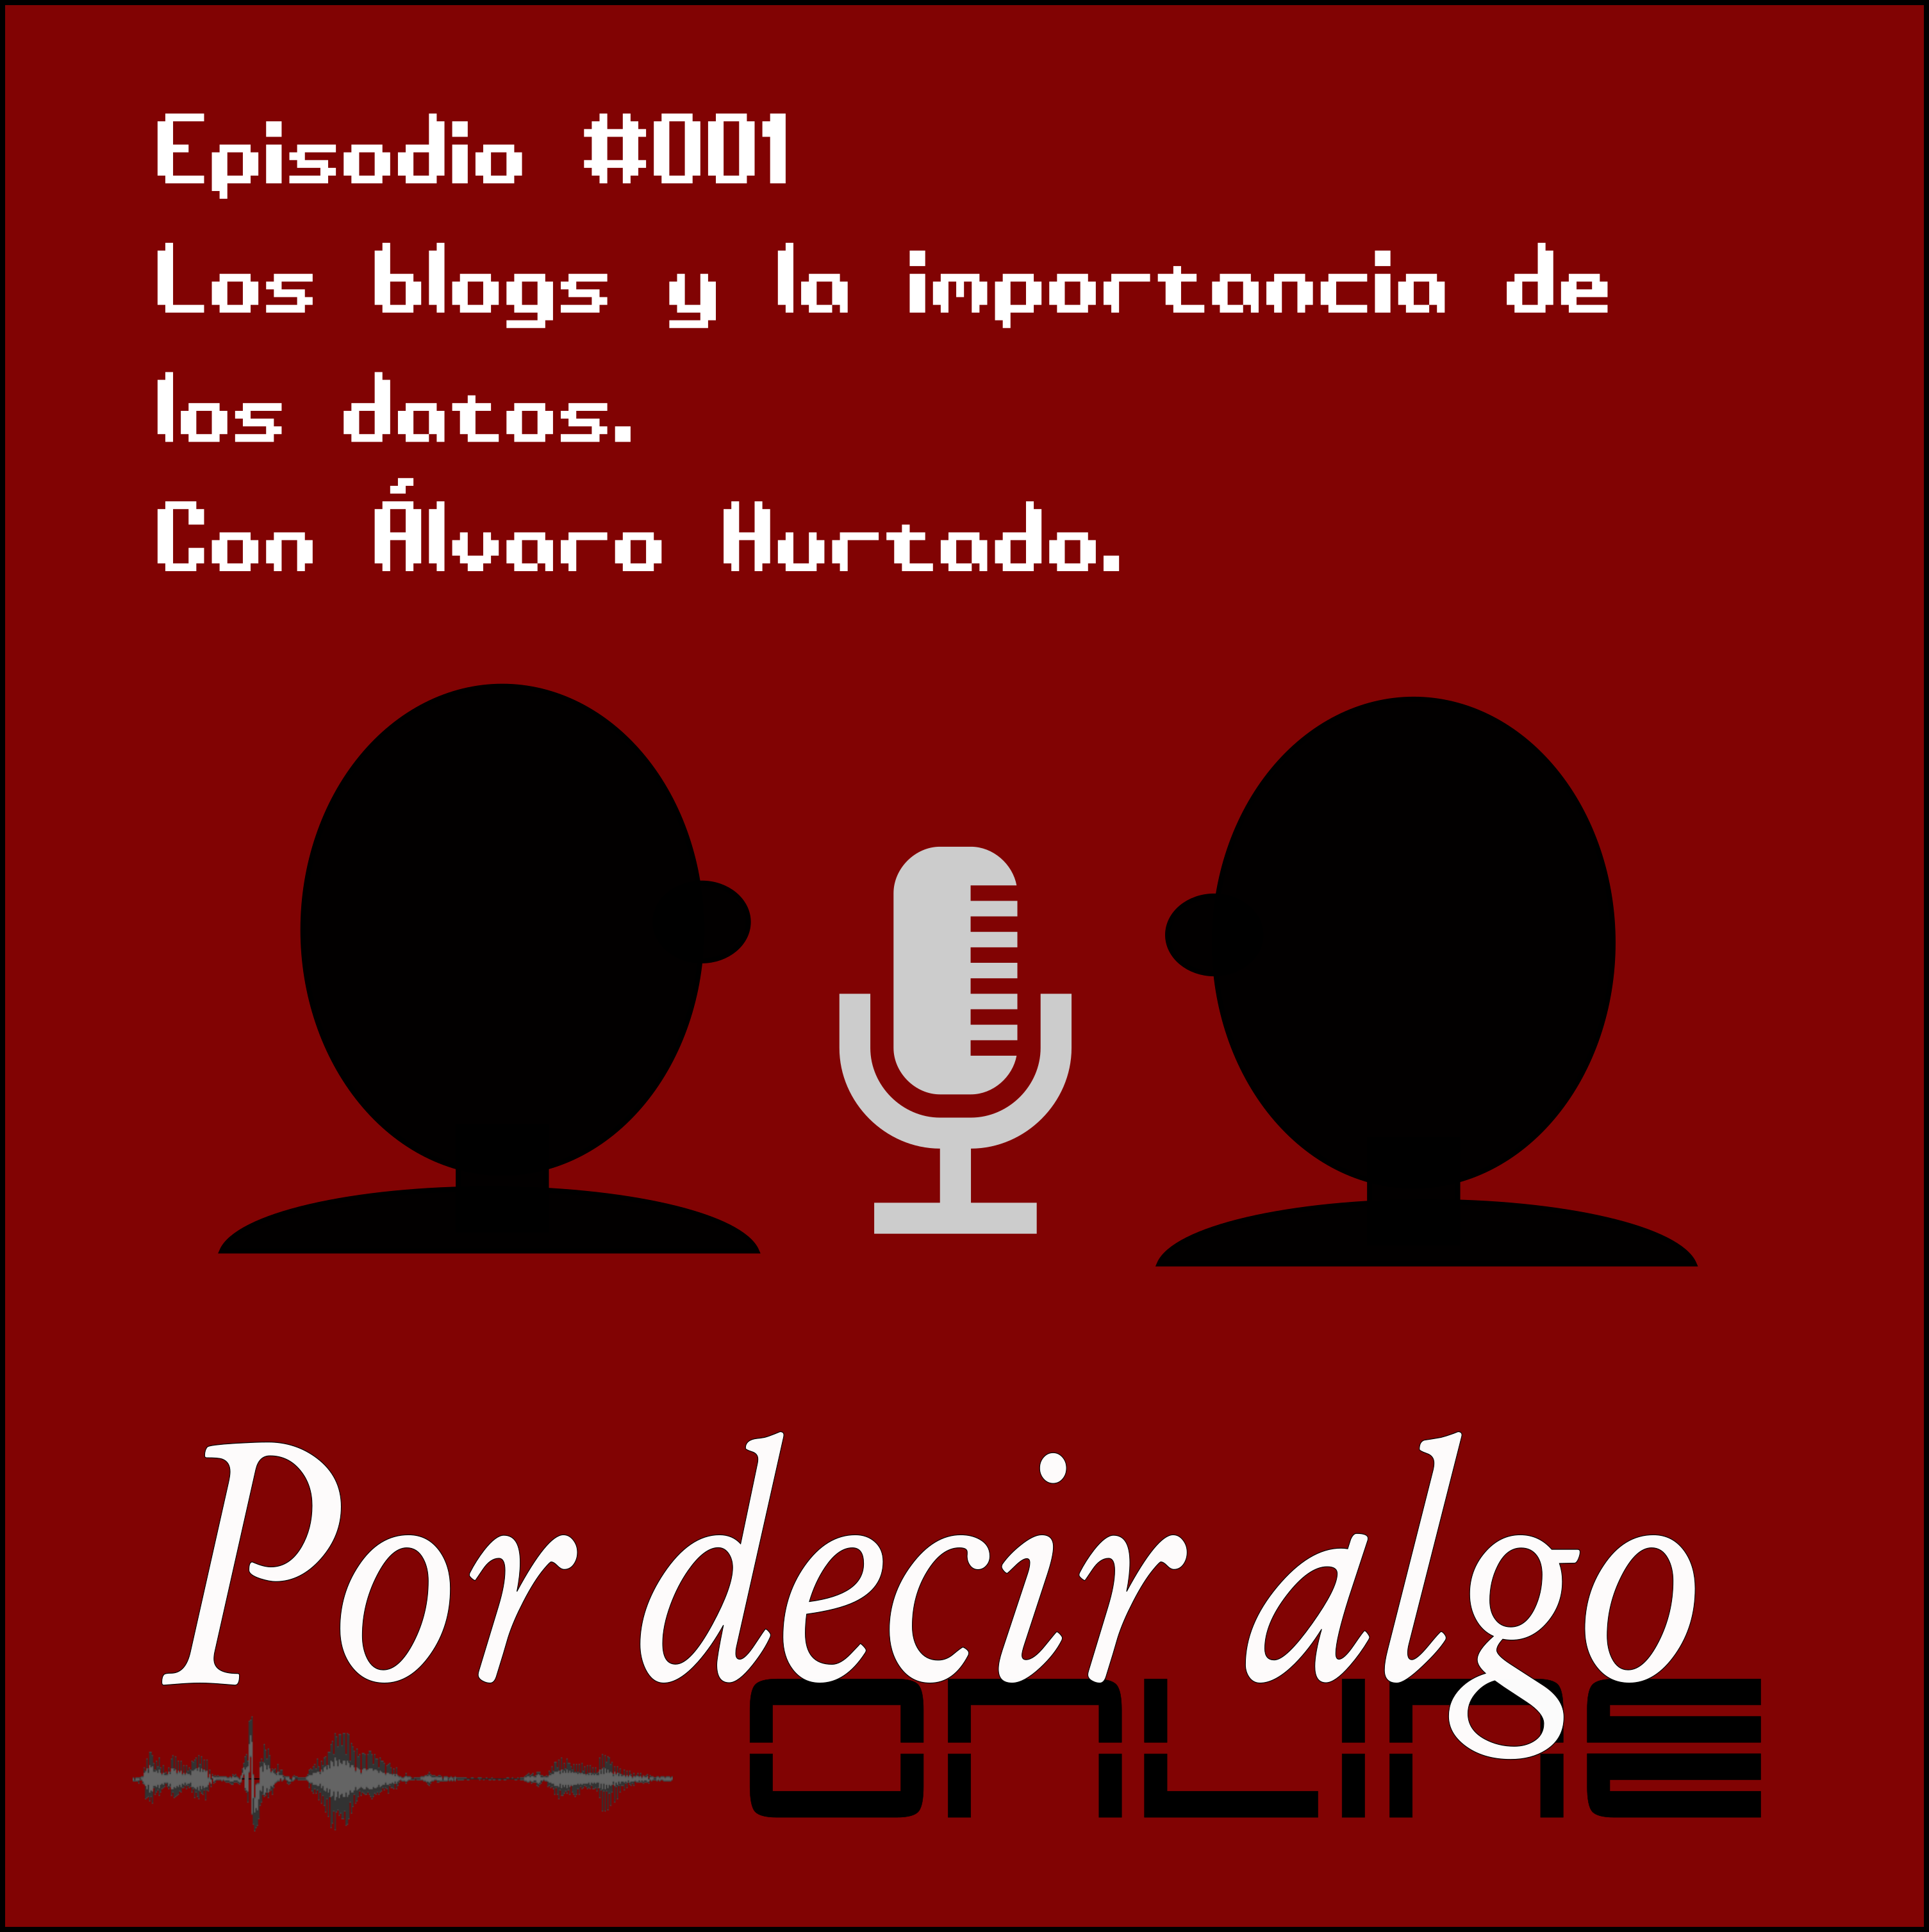 Podcast #001: Alvaro Hurtado, los blogs y la importancia de los datos